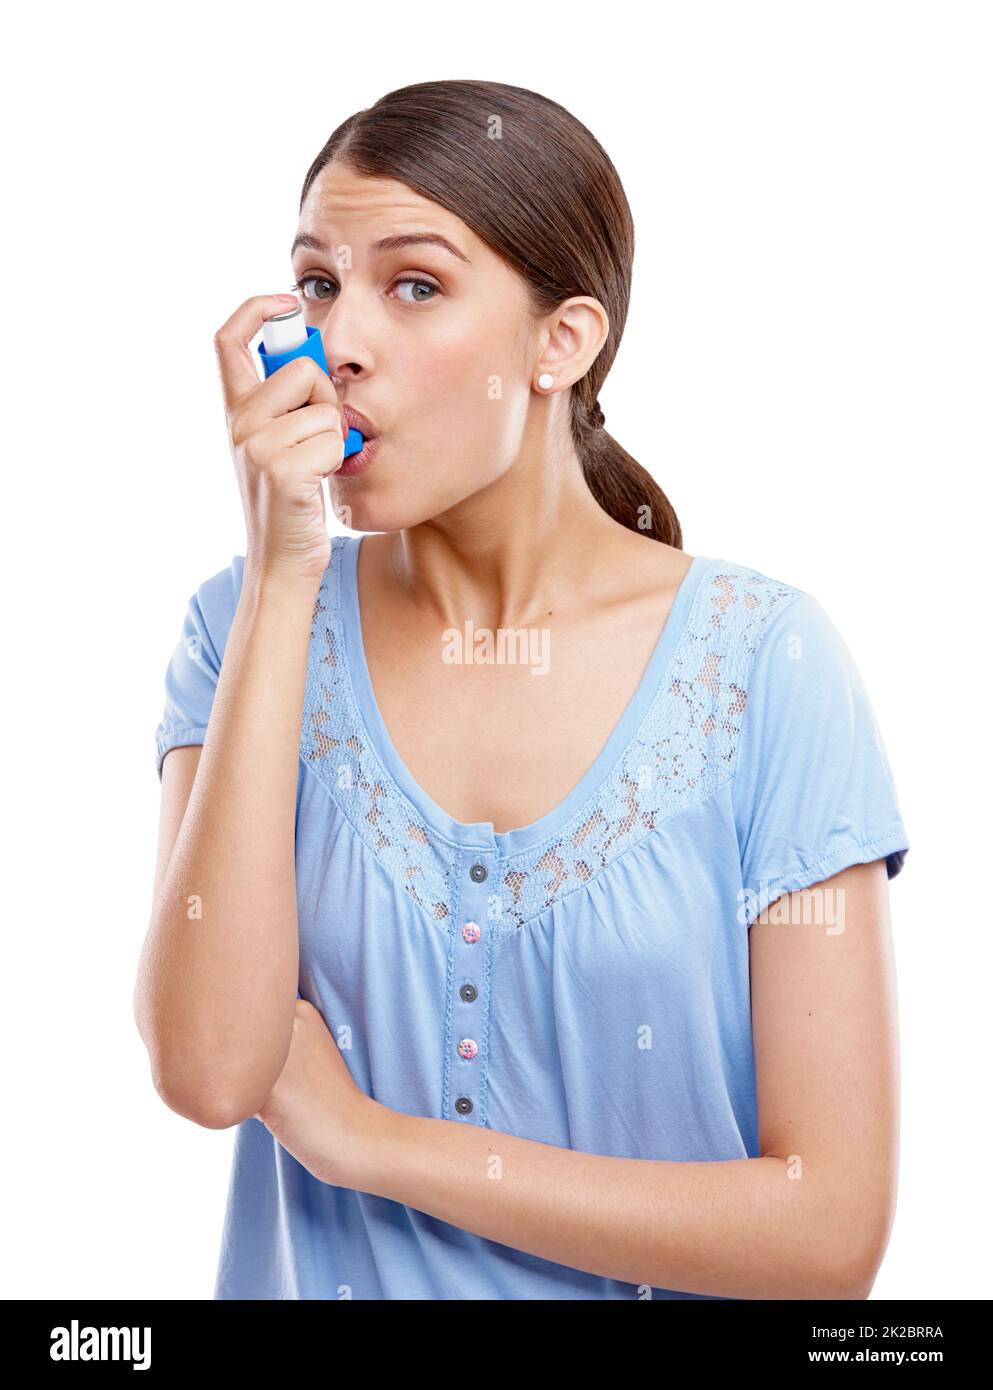 Atmen Sie tief durch. Studioportrait einer attraktiven jungen Frau, die einen Asthma-Inhalator verwendet. Stockfoto